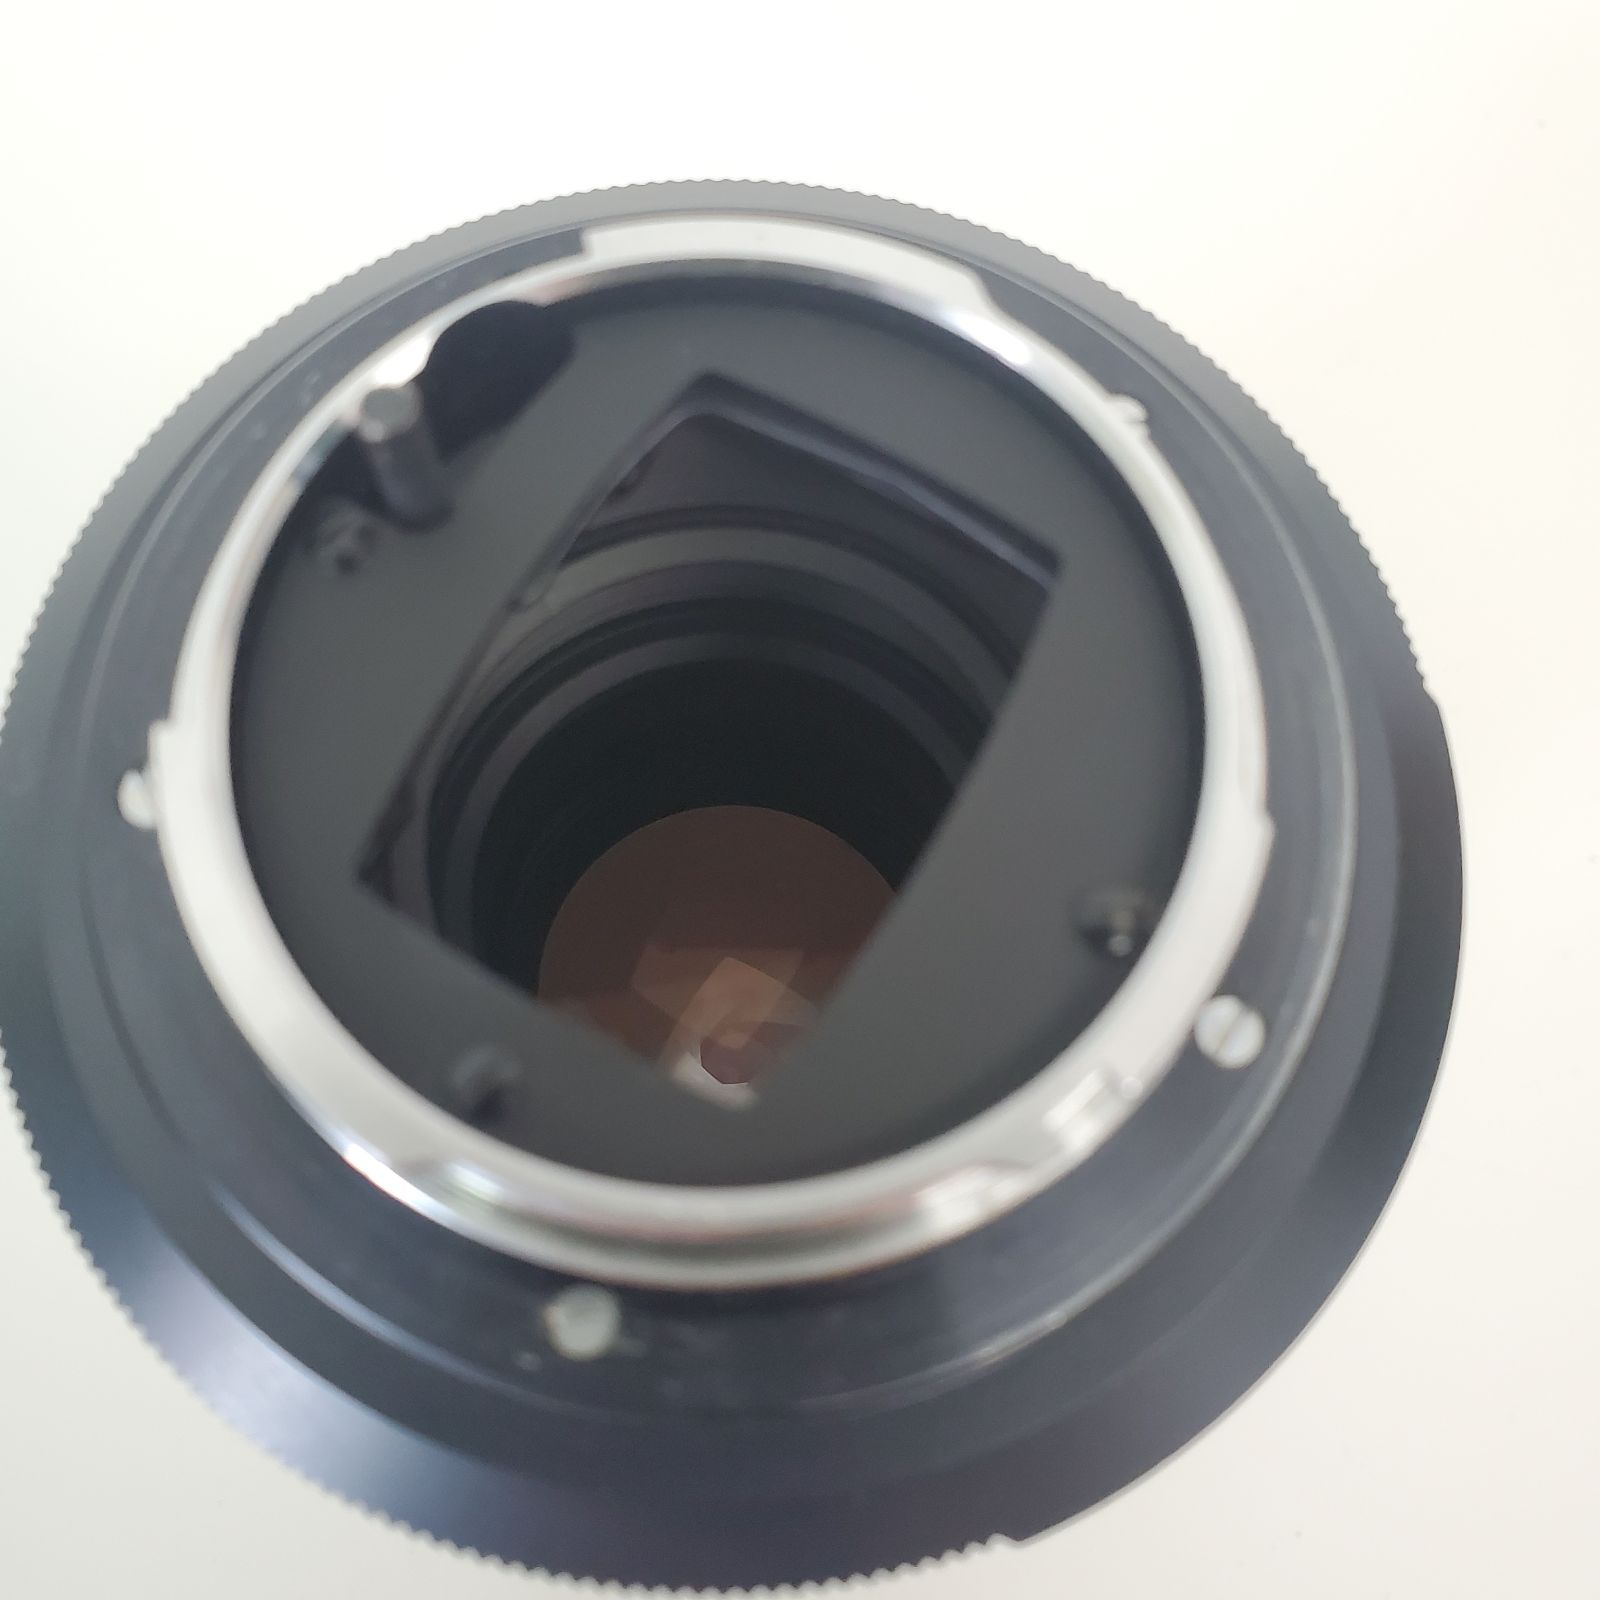 基本動作確認 ミノルタ MINOLTA AUTO TELE ROKKOR-QF 200mm f/3.5 レンズ オールドレンズ SRマウント  エクステンションチューブ 中間リング No.1 No.2 付き 一眼レフカメラ用